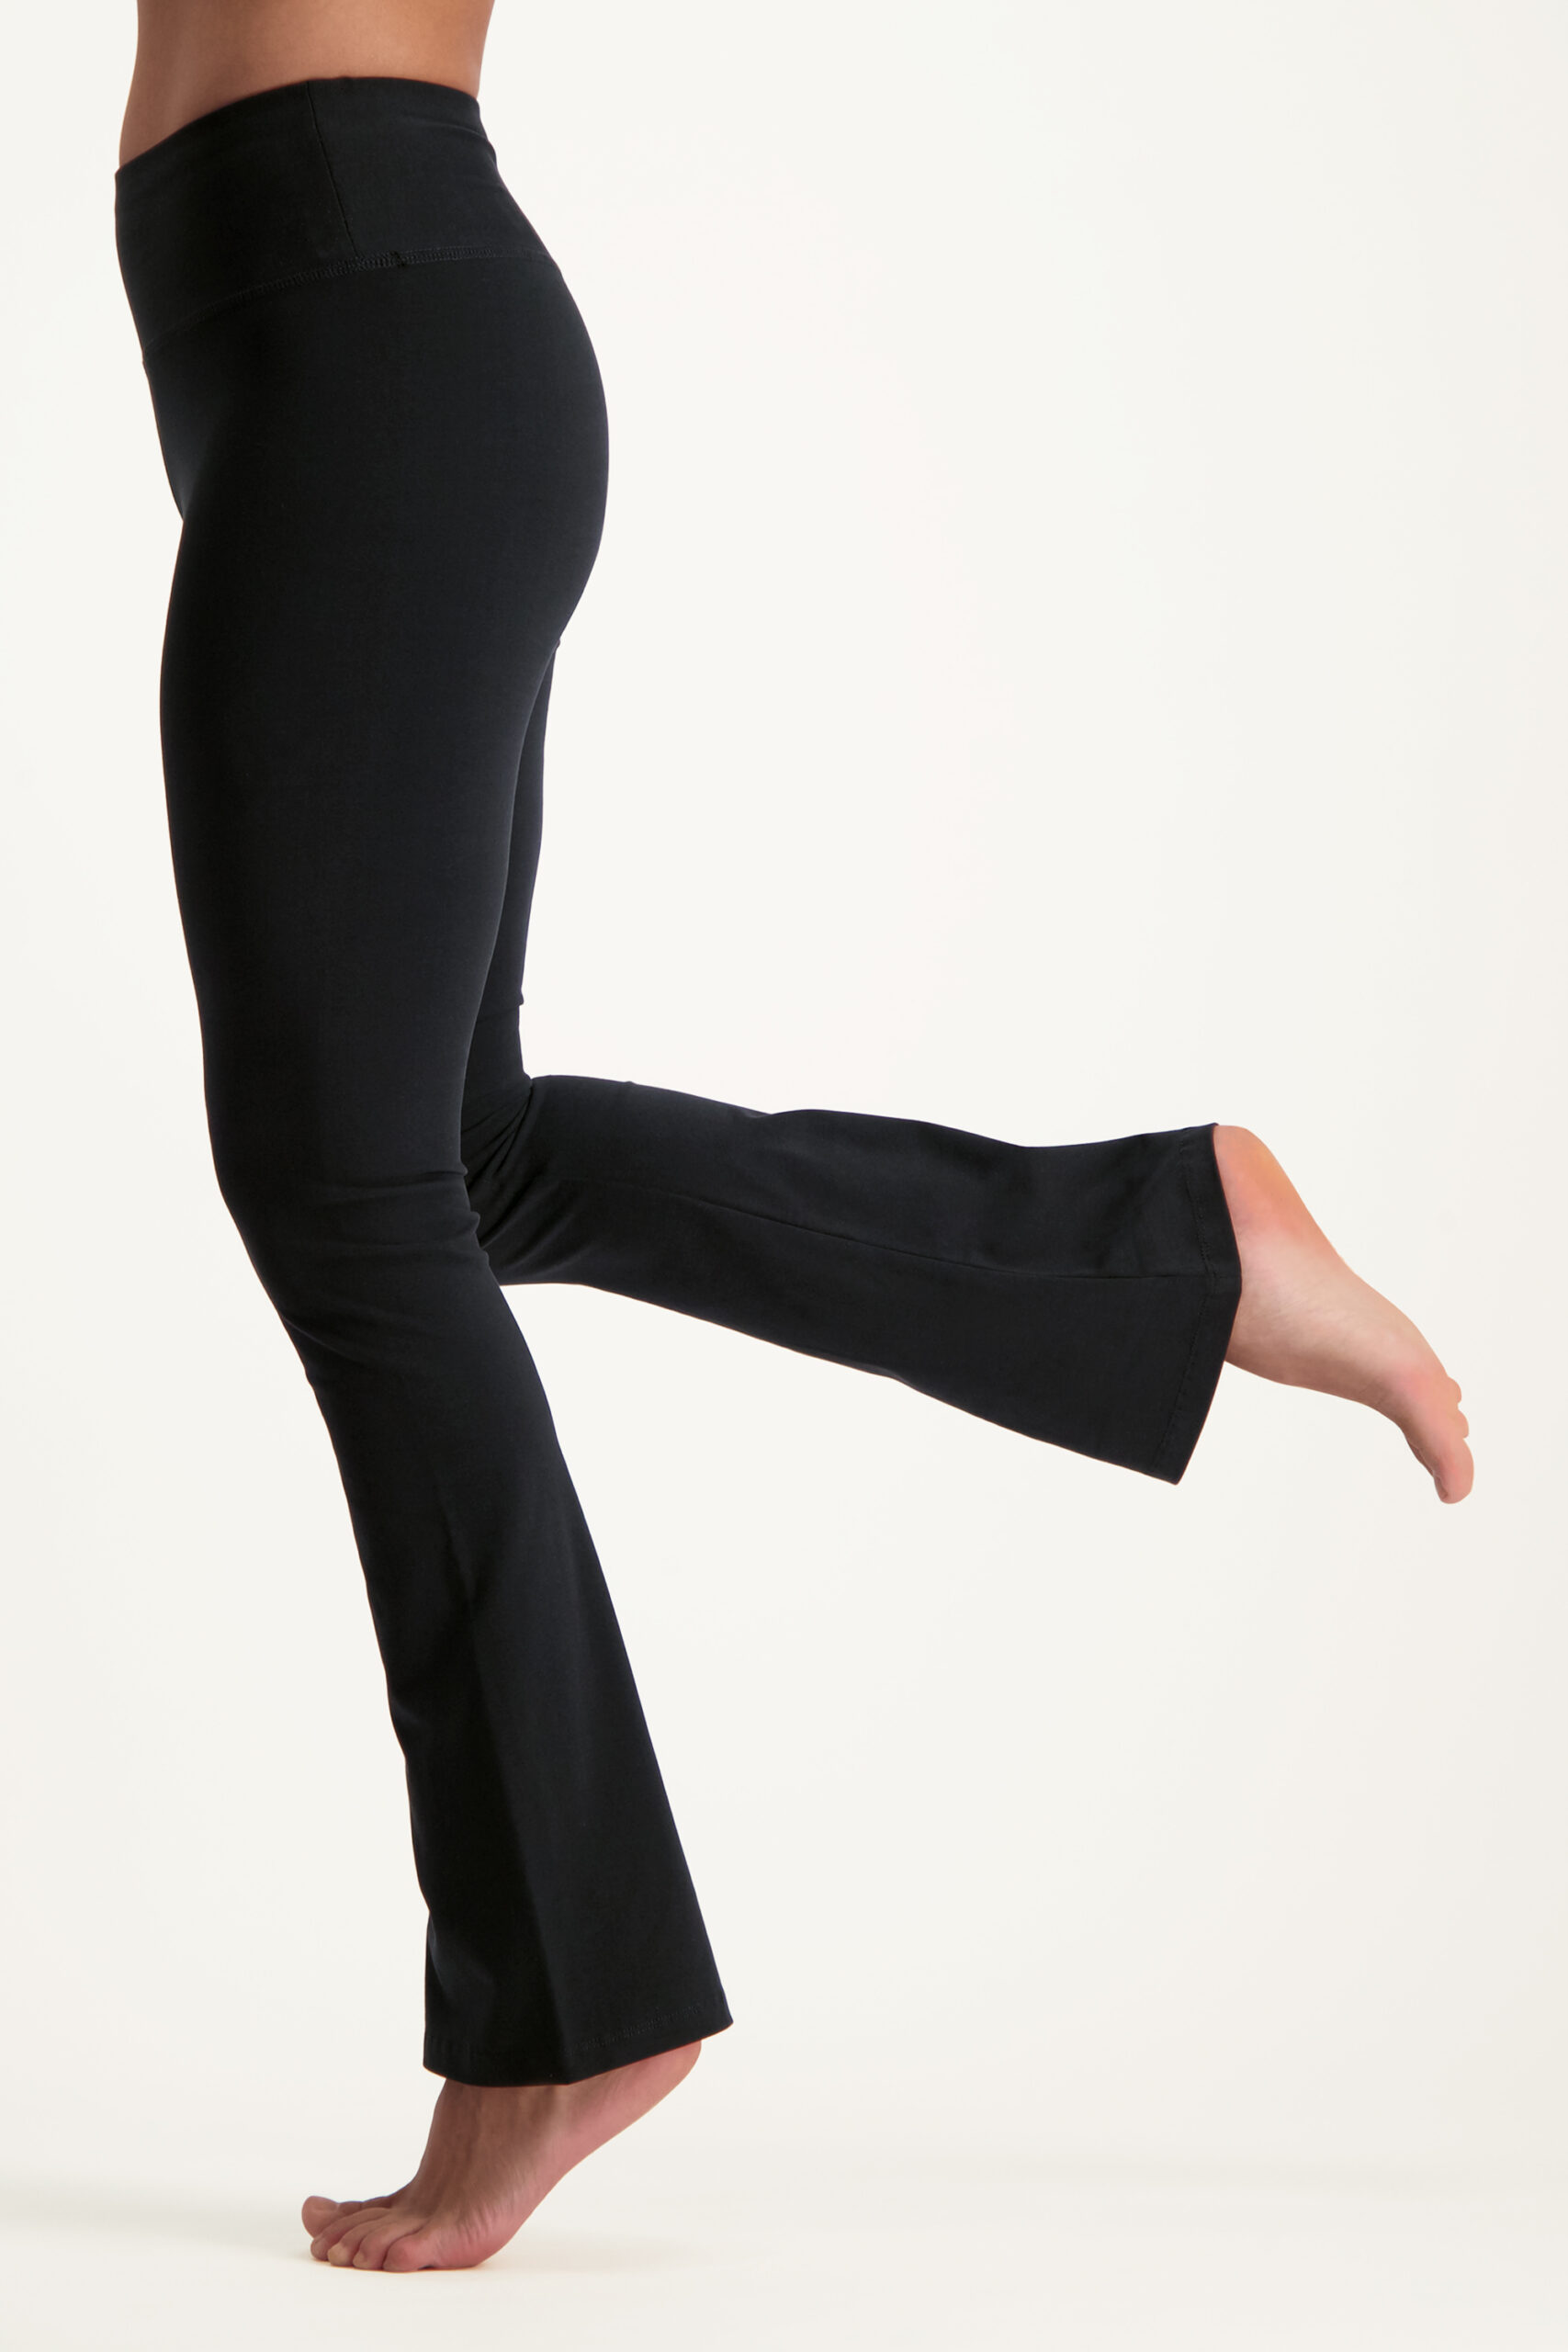 Anandafied Flared Yoga broek, Urban Black